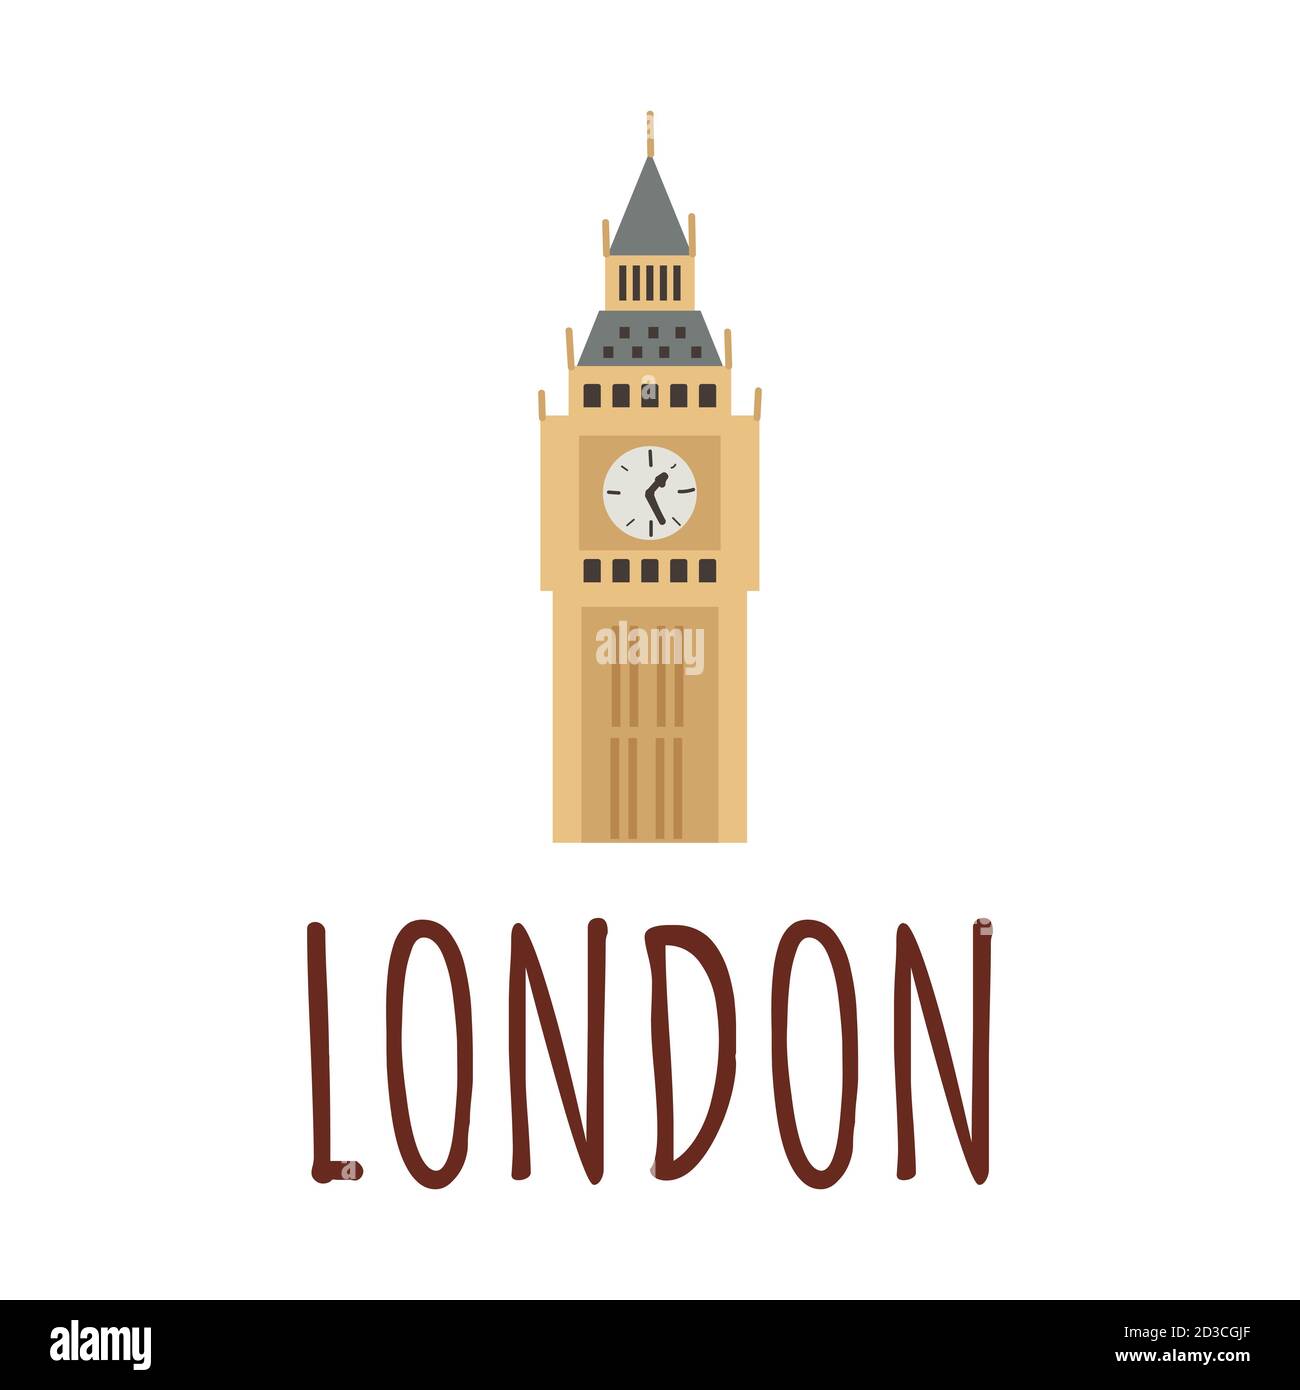 Das Wahrzeichen Londons ist der Big Ben Clock Tower. Farbige Vektordarstellung isoliert auf weißem Hintergrund. Schriftzug London. Stock Vektor